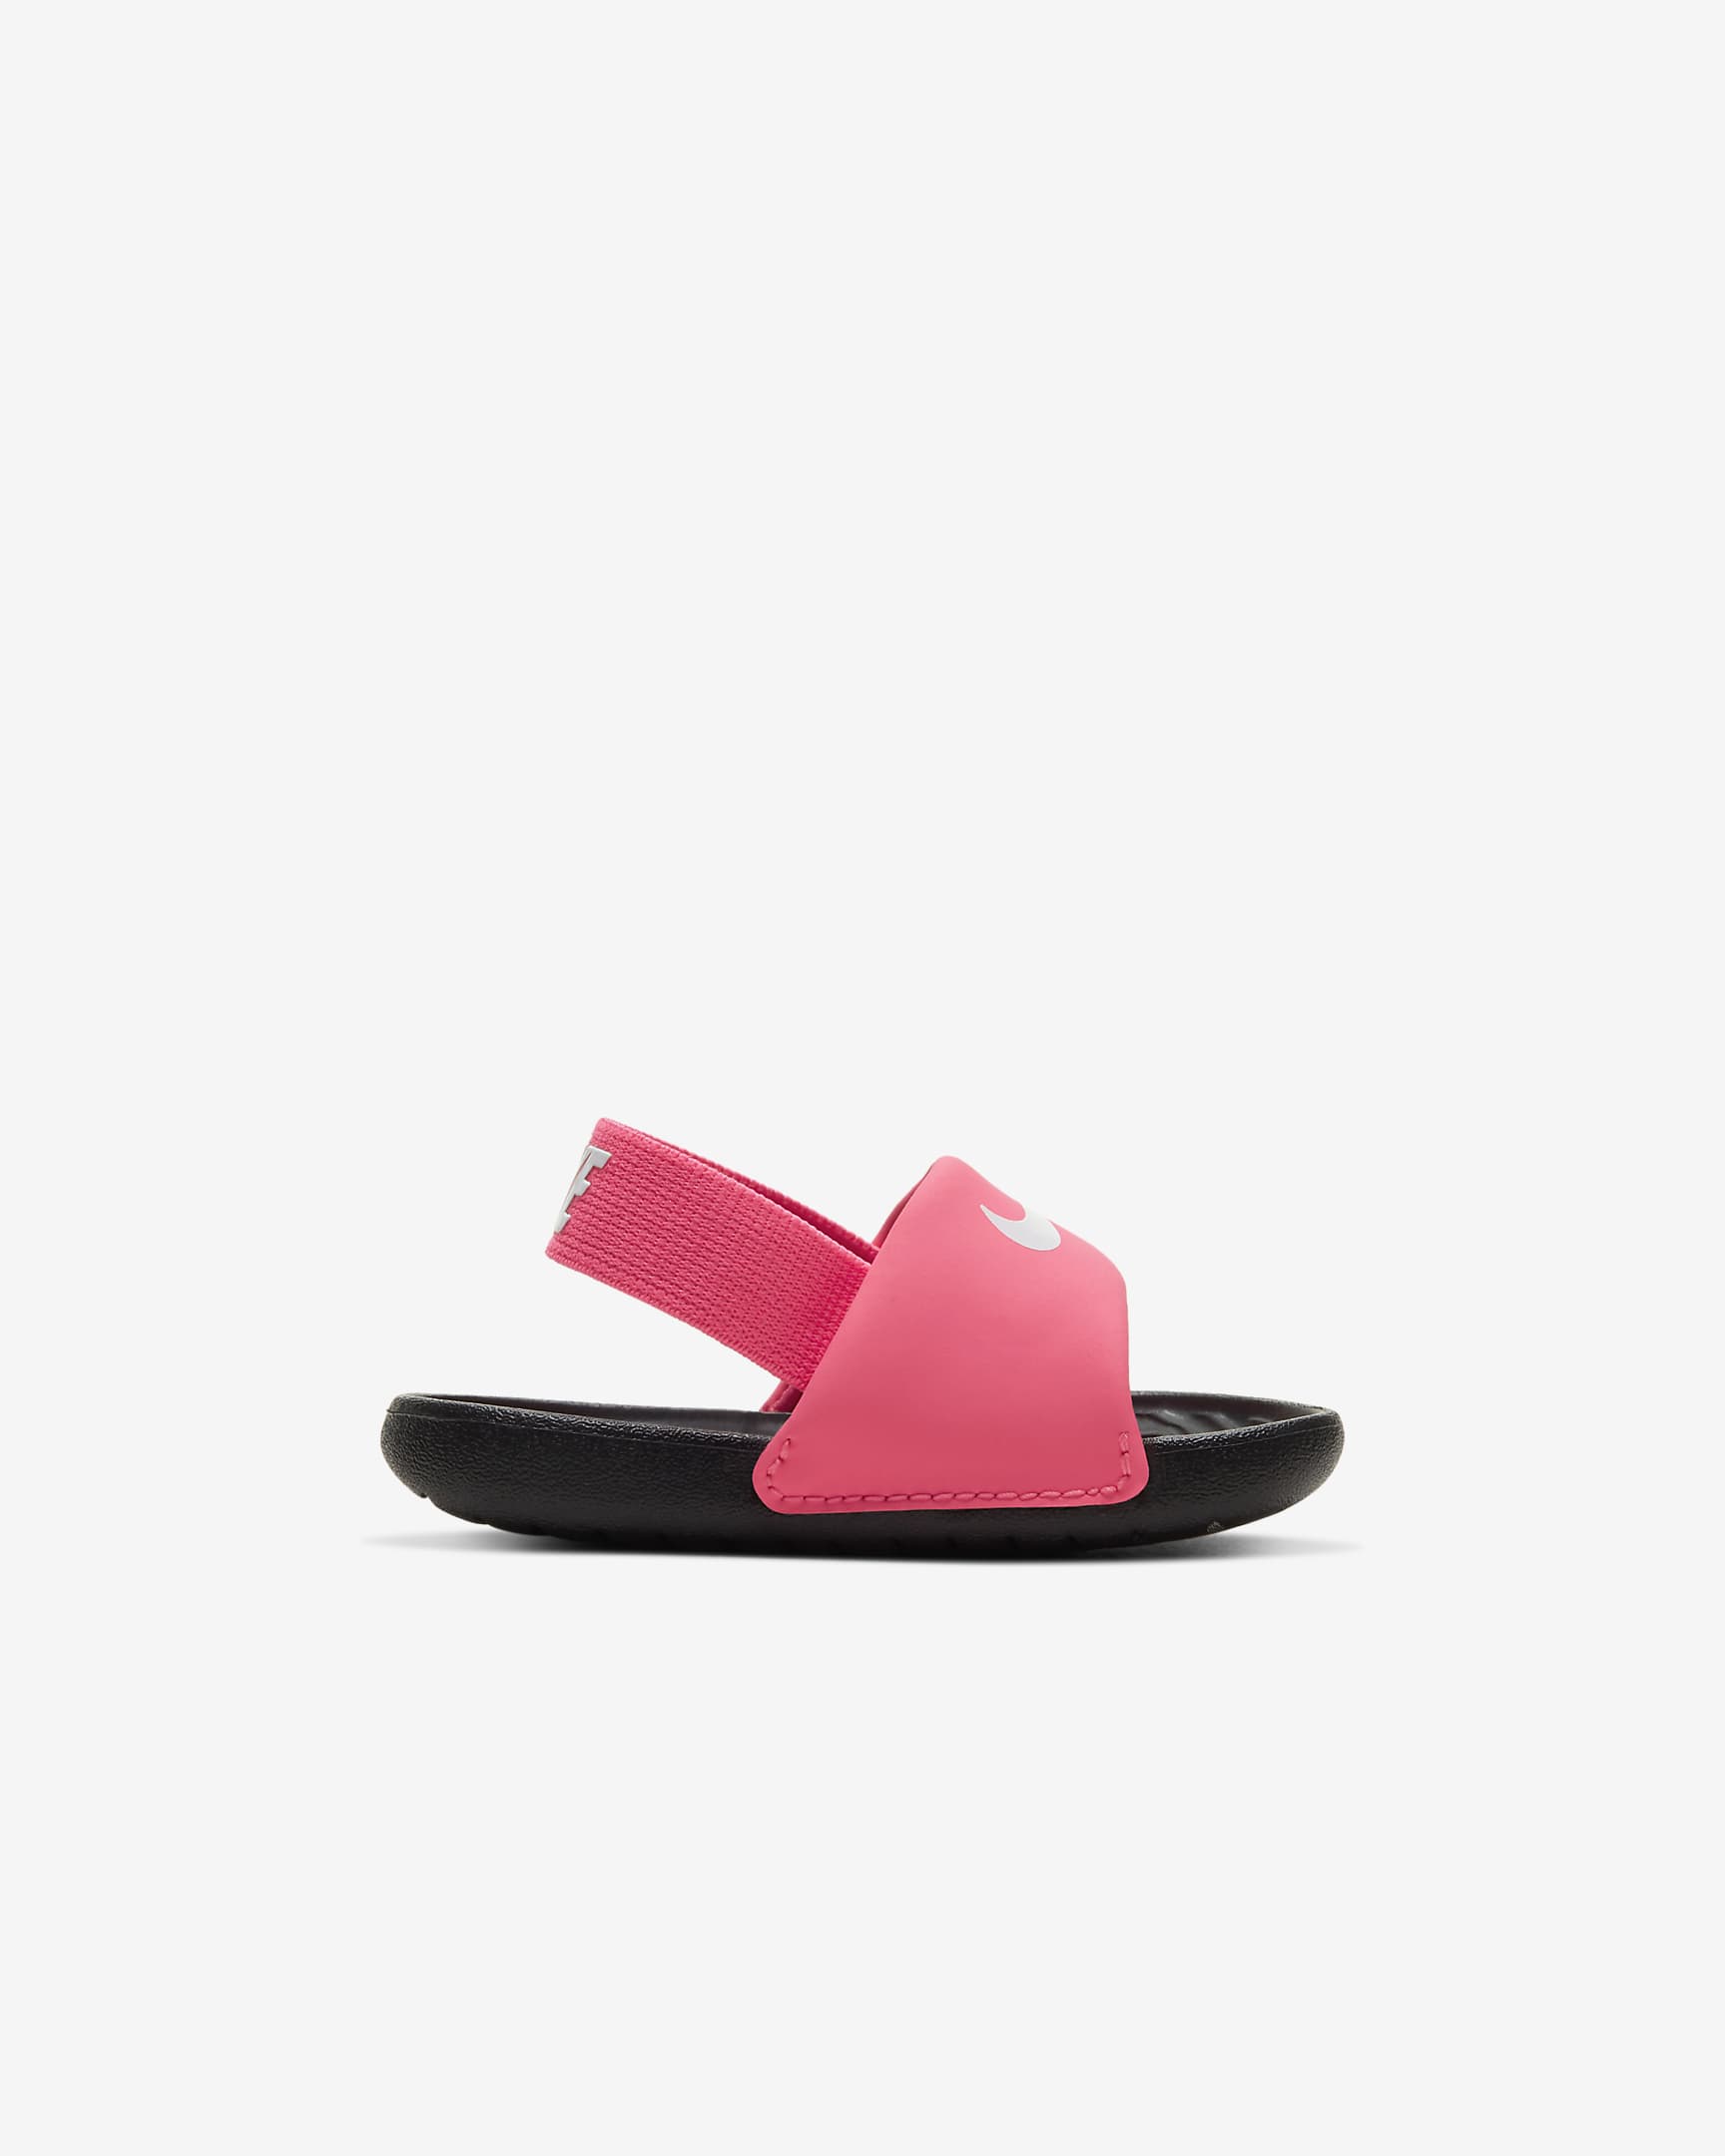 Nike Kawa Baby & Toddler Slides - Digital Pink/Black/White